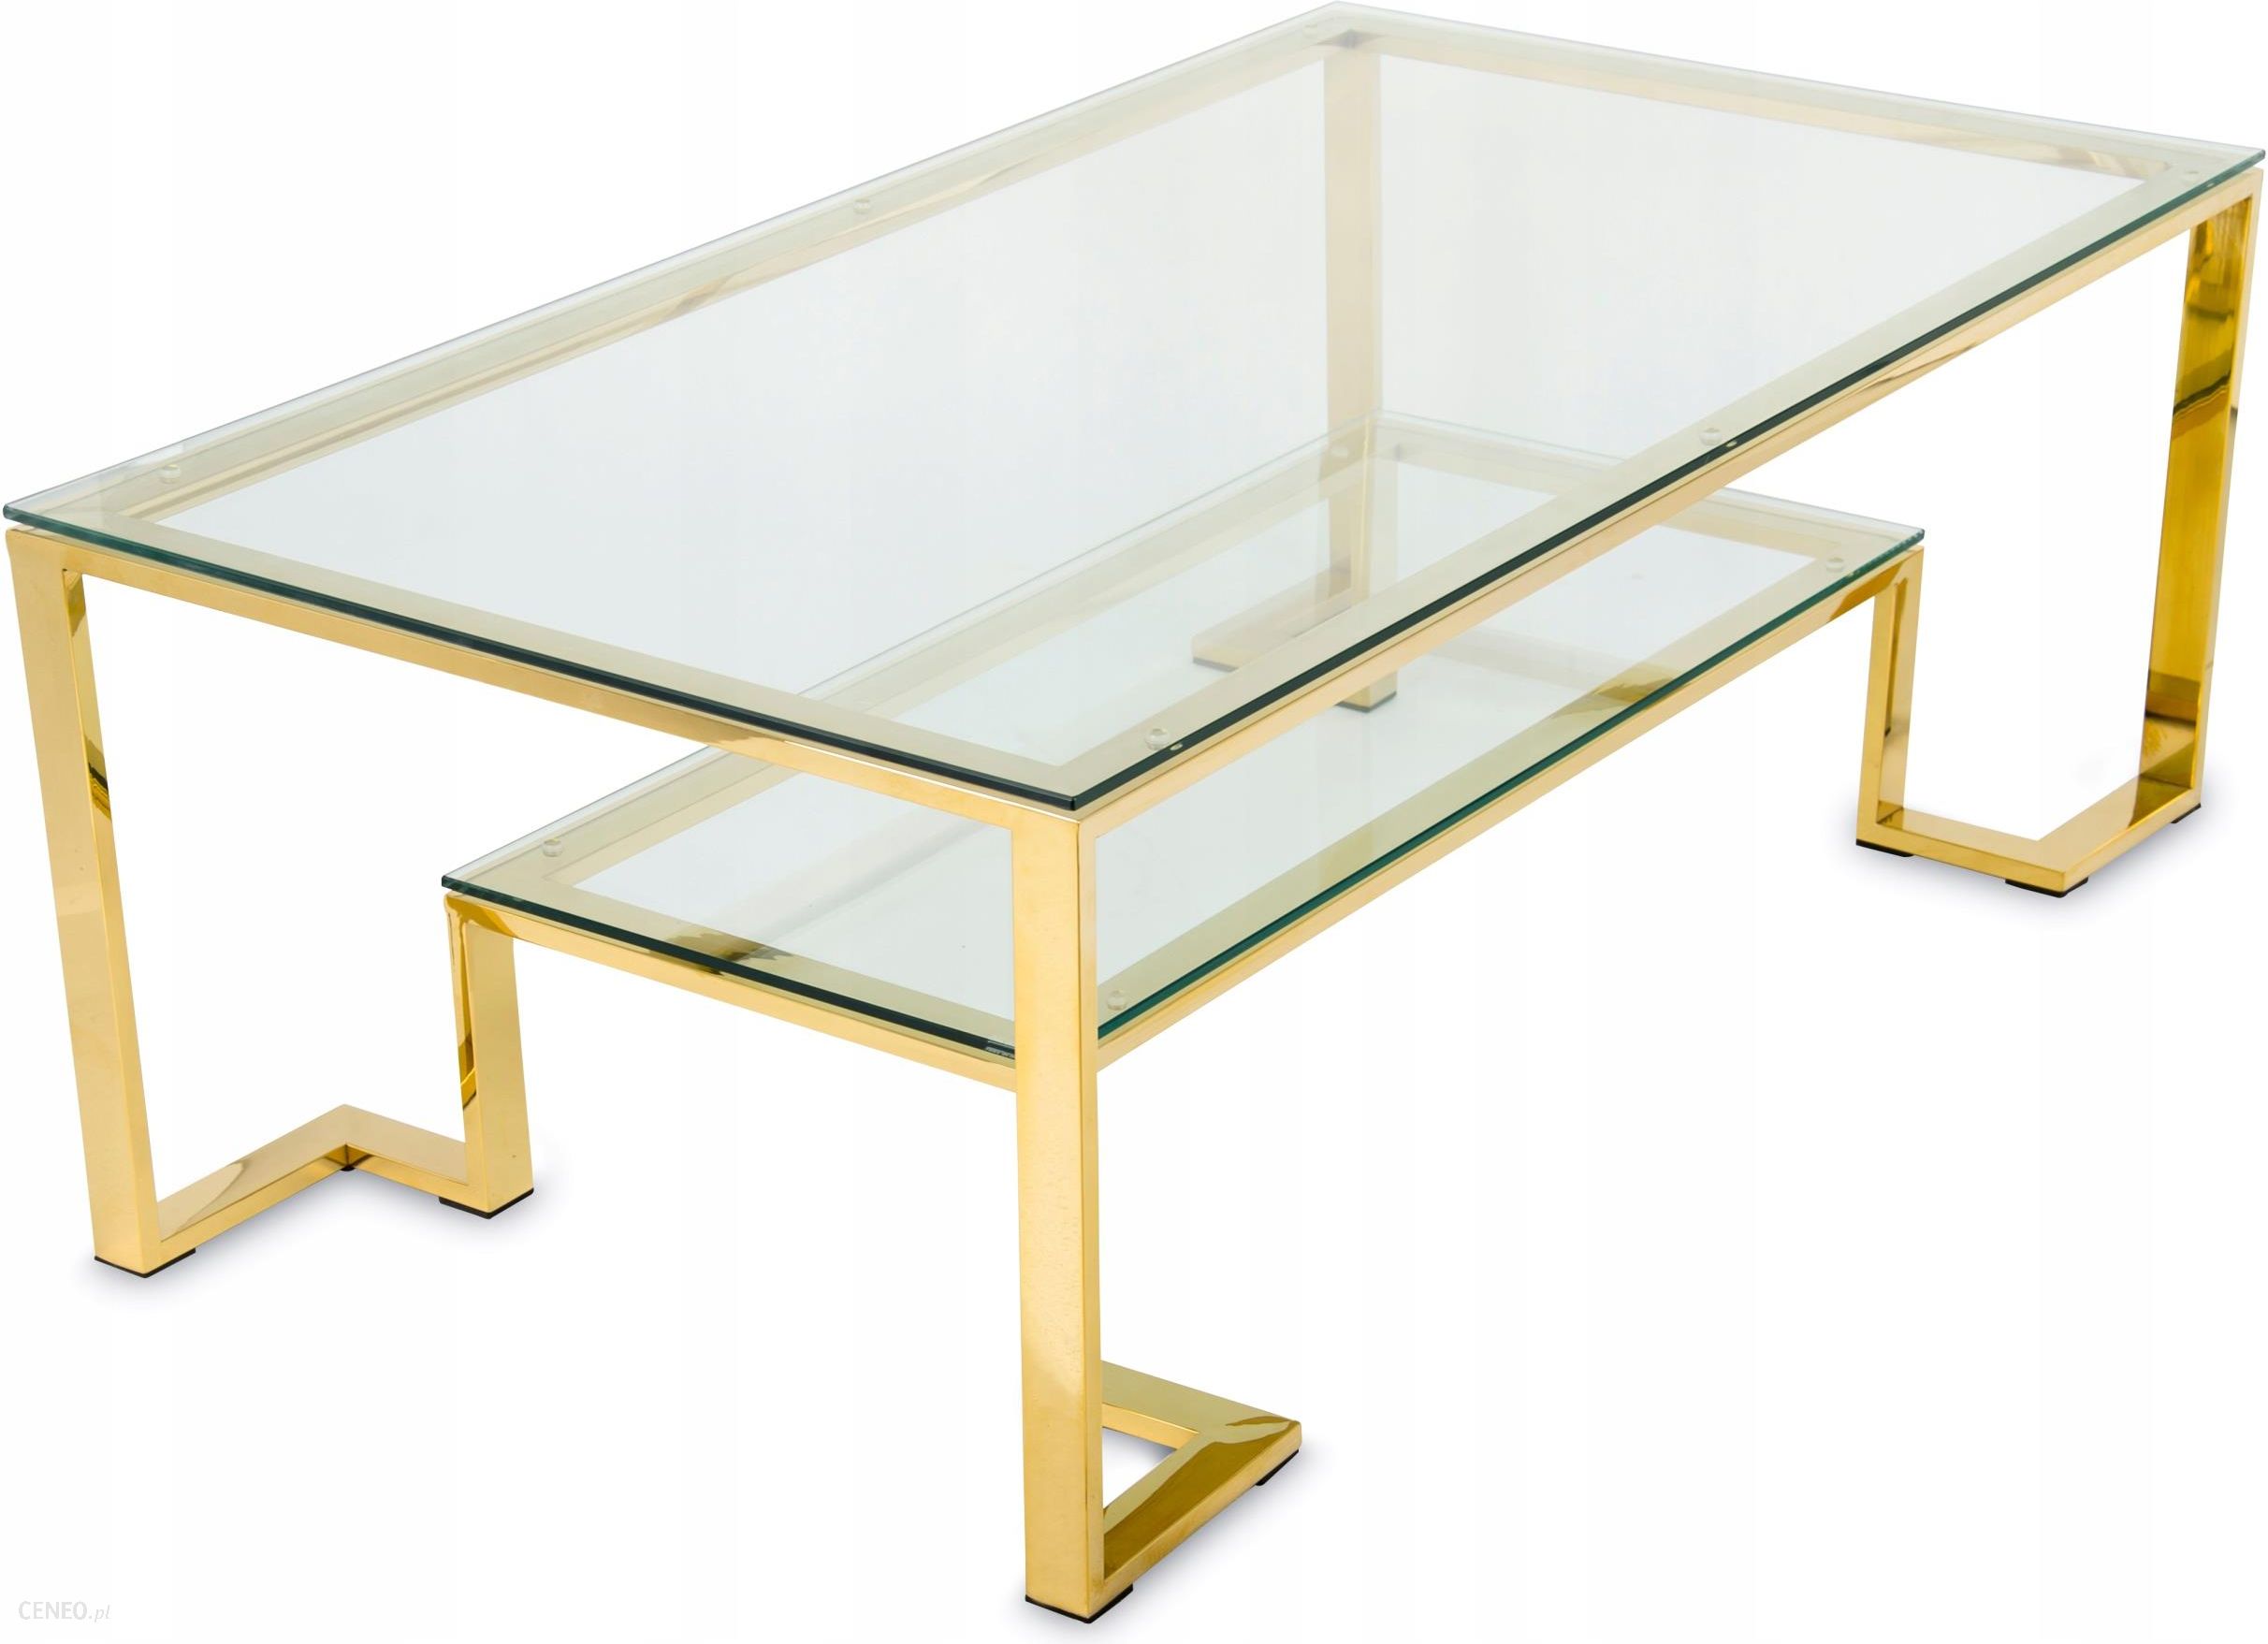 Золотистый стол. Журнальный столик золото стекло. Журнальный столик стеклянный прямоугольный. Стол золотой со стеклом. Стол журнальный прямоугольный со стеклом.